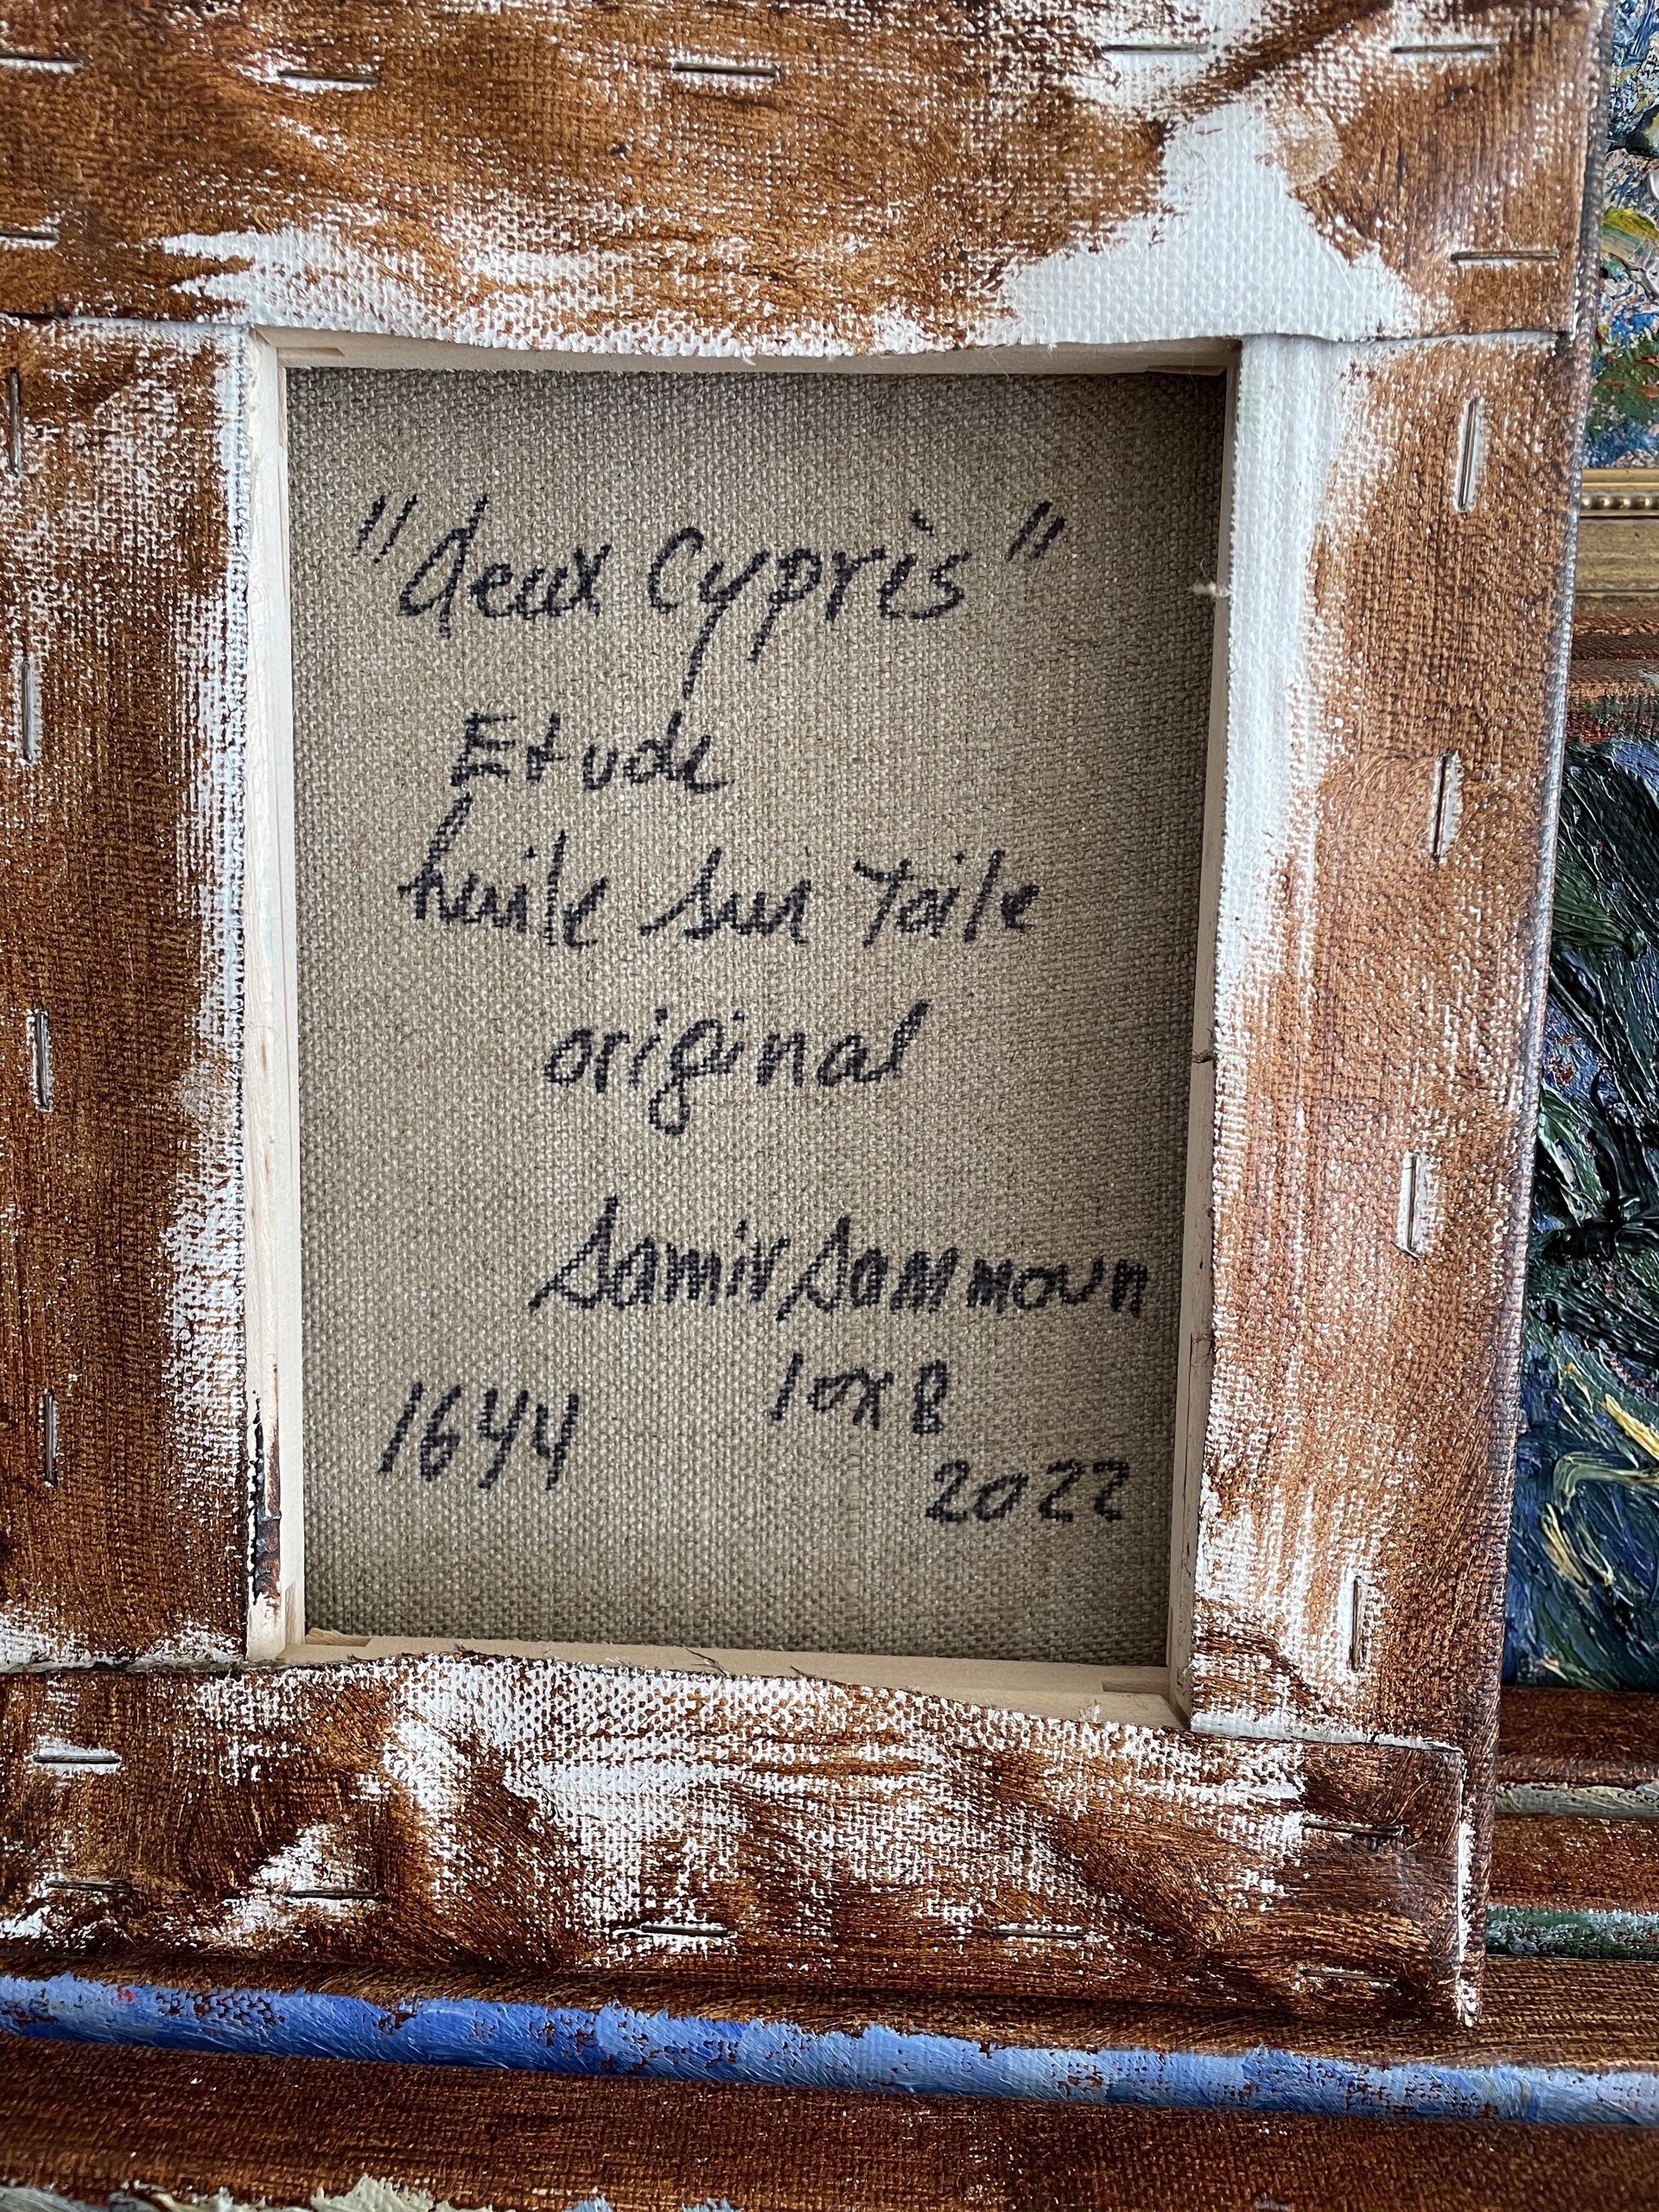 Deux cyprès, étude by Samir Sammoun